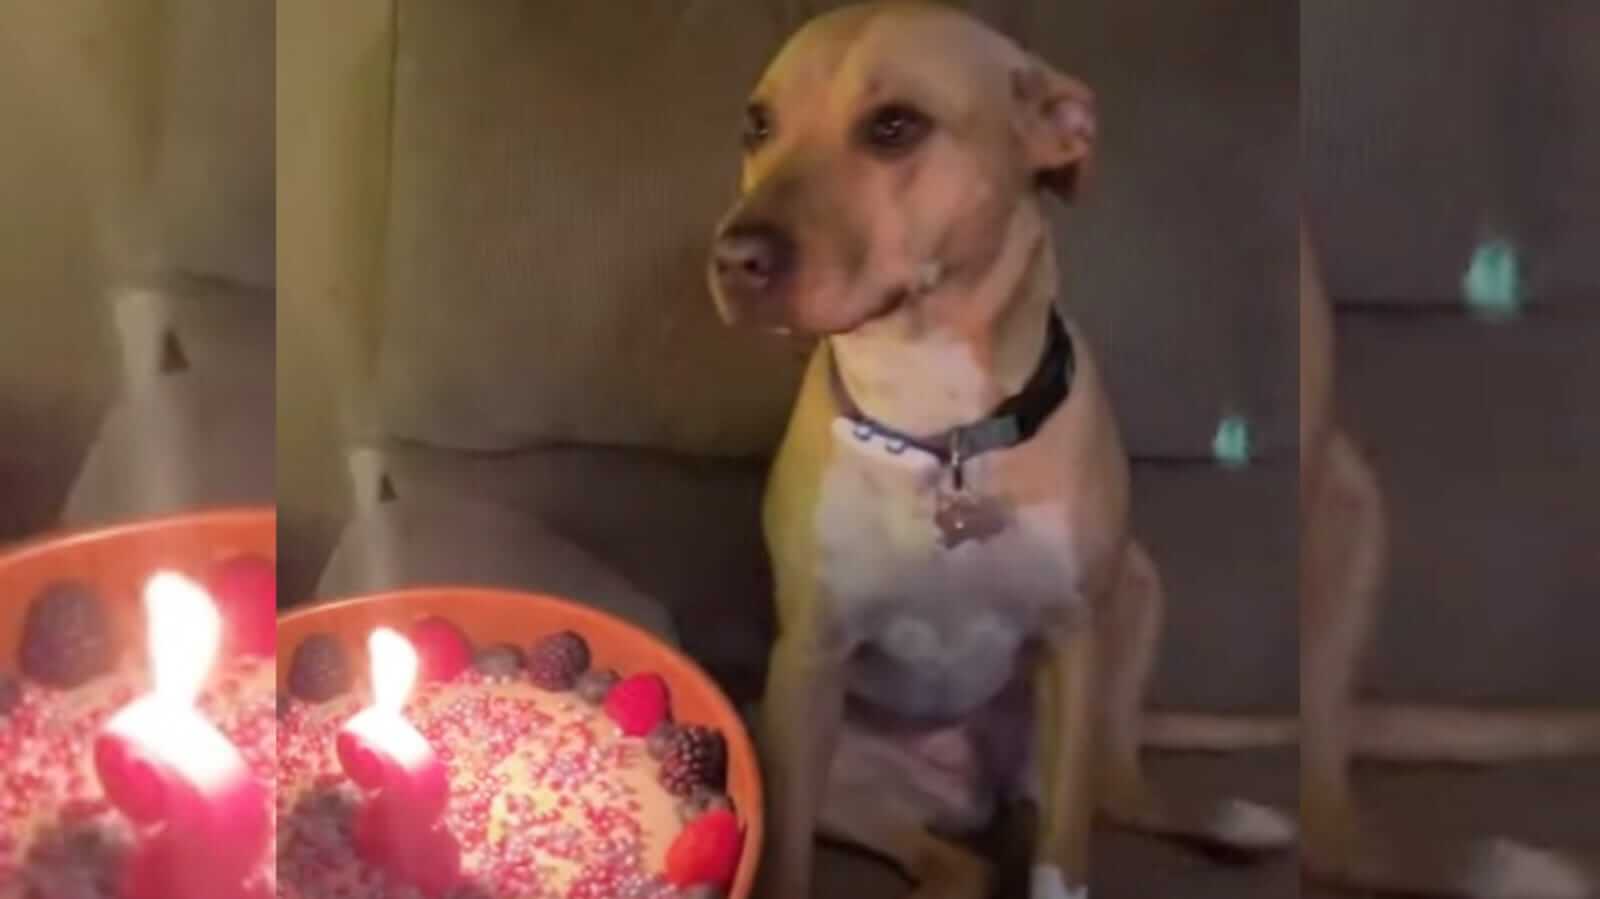 Cachorro com bolo de aniversário